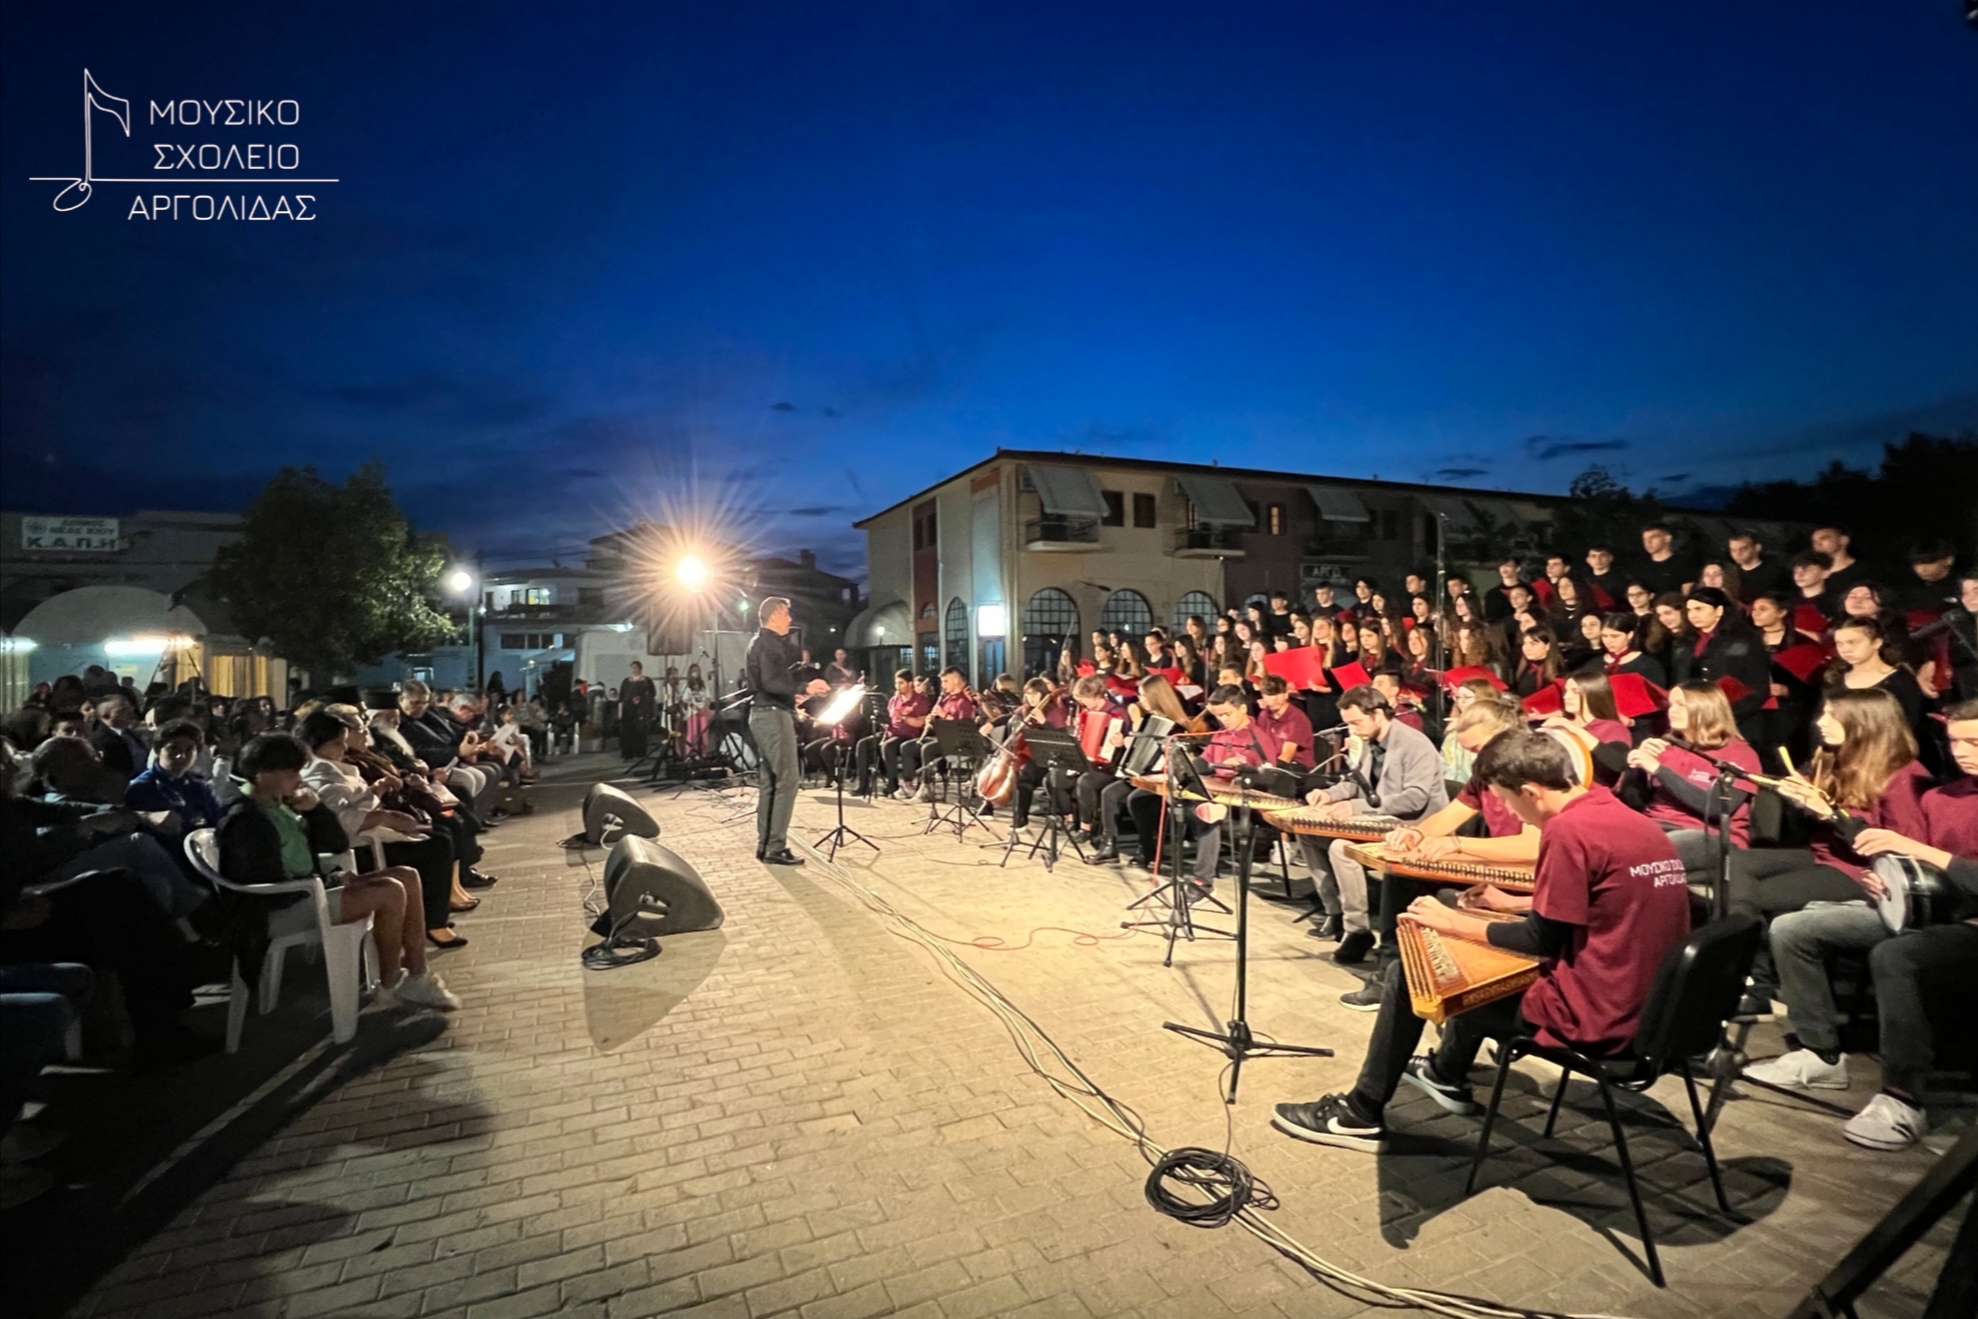 Μουσικό Σχολείο Αργολίδας Συναυλία Νέα Κίος (1)